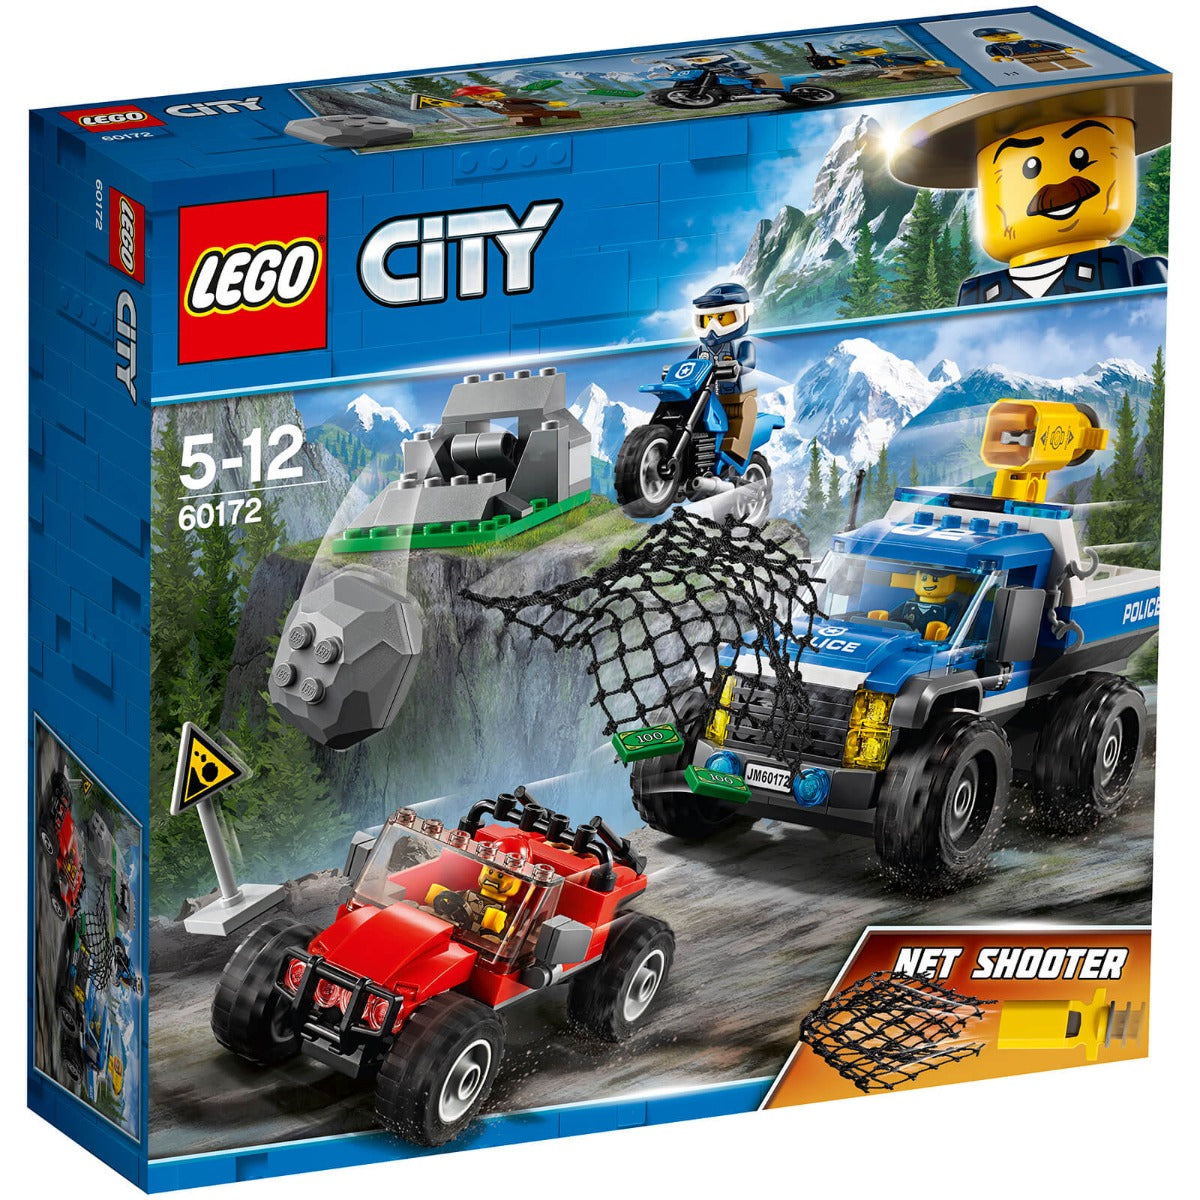 LEGO City Dirt Road Pursuit 60172